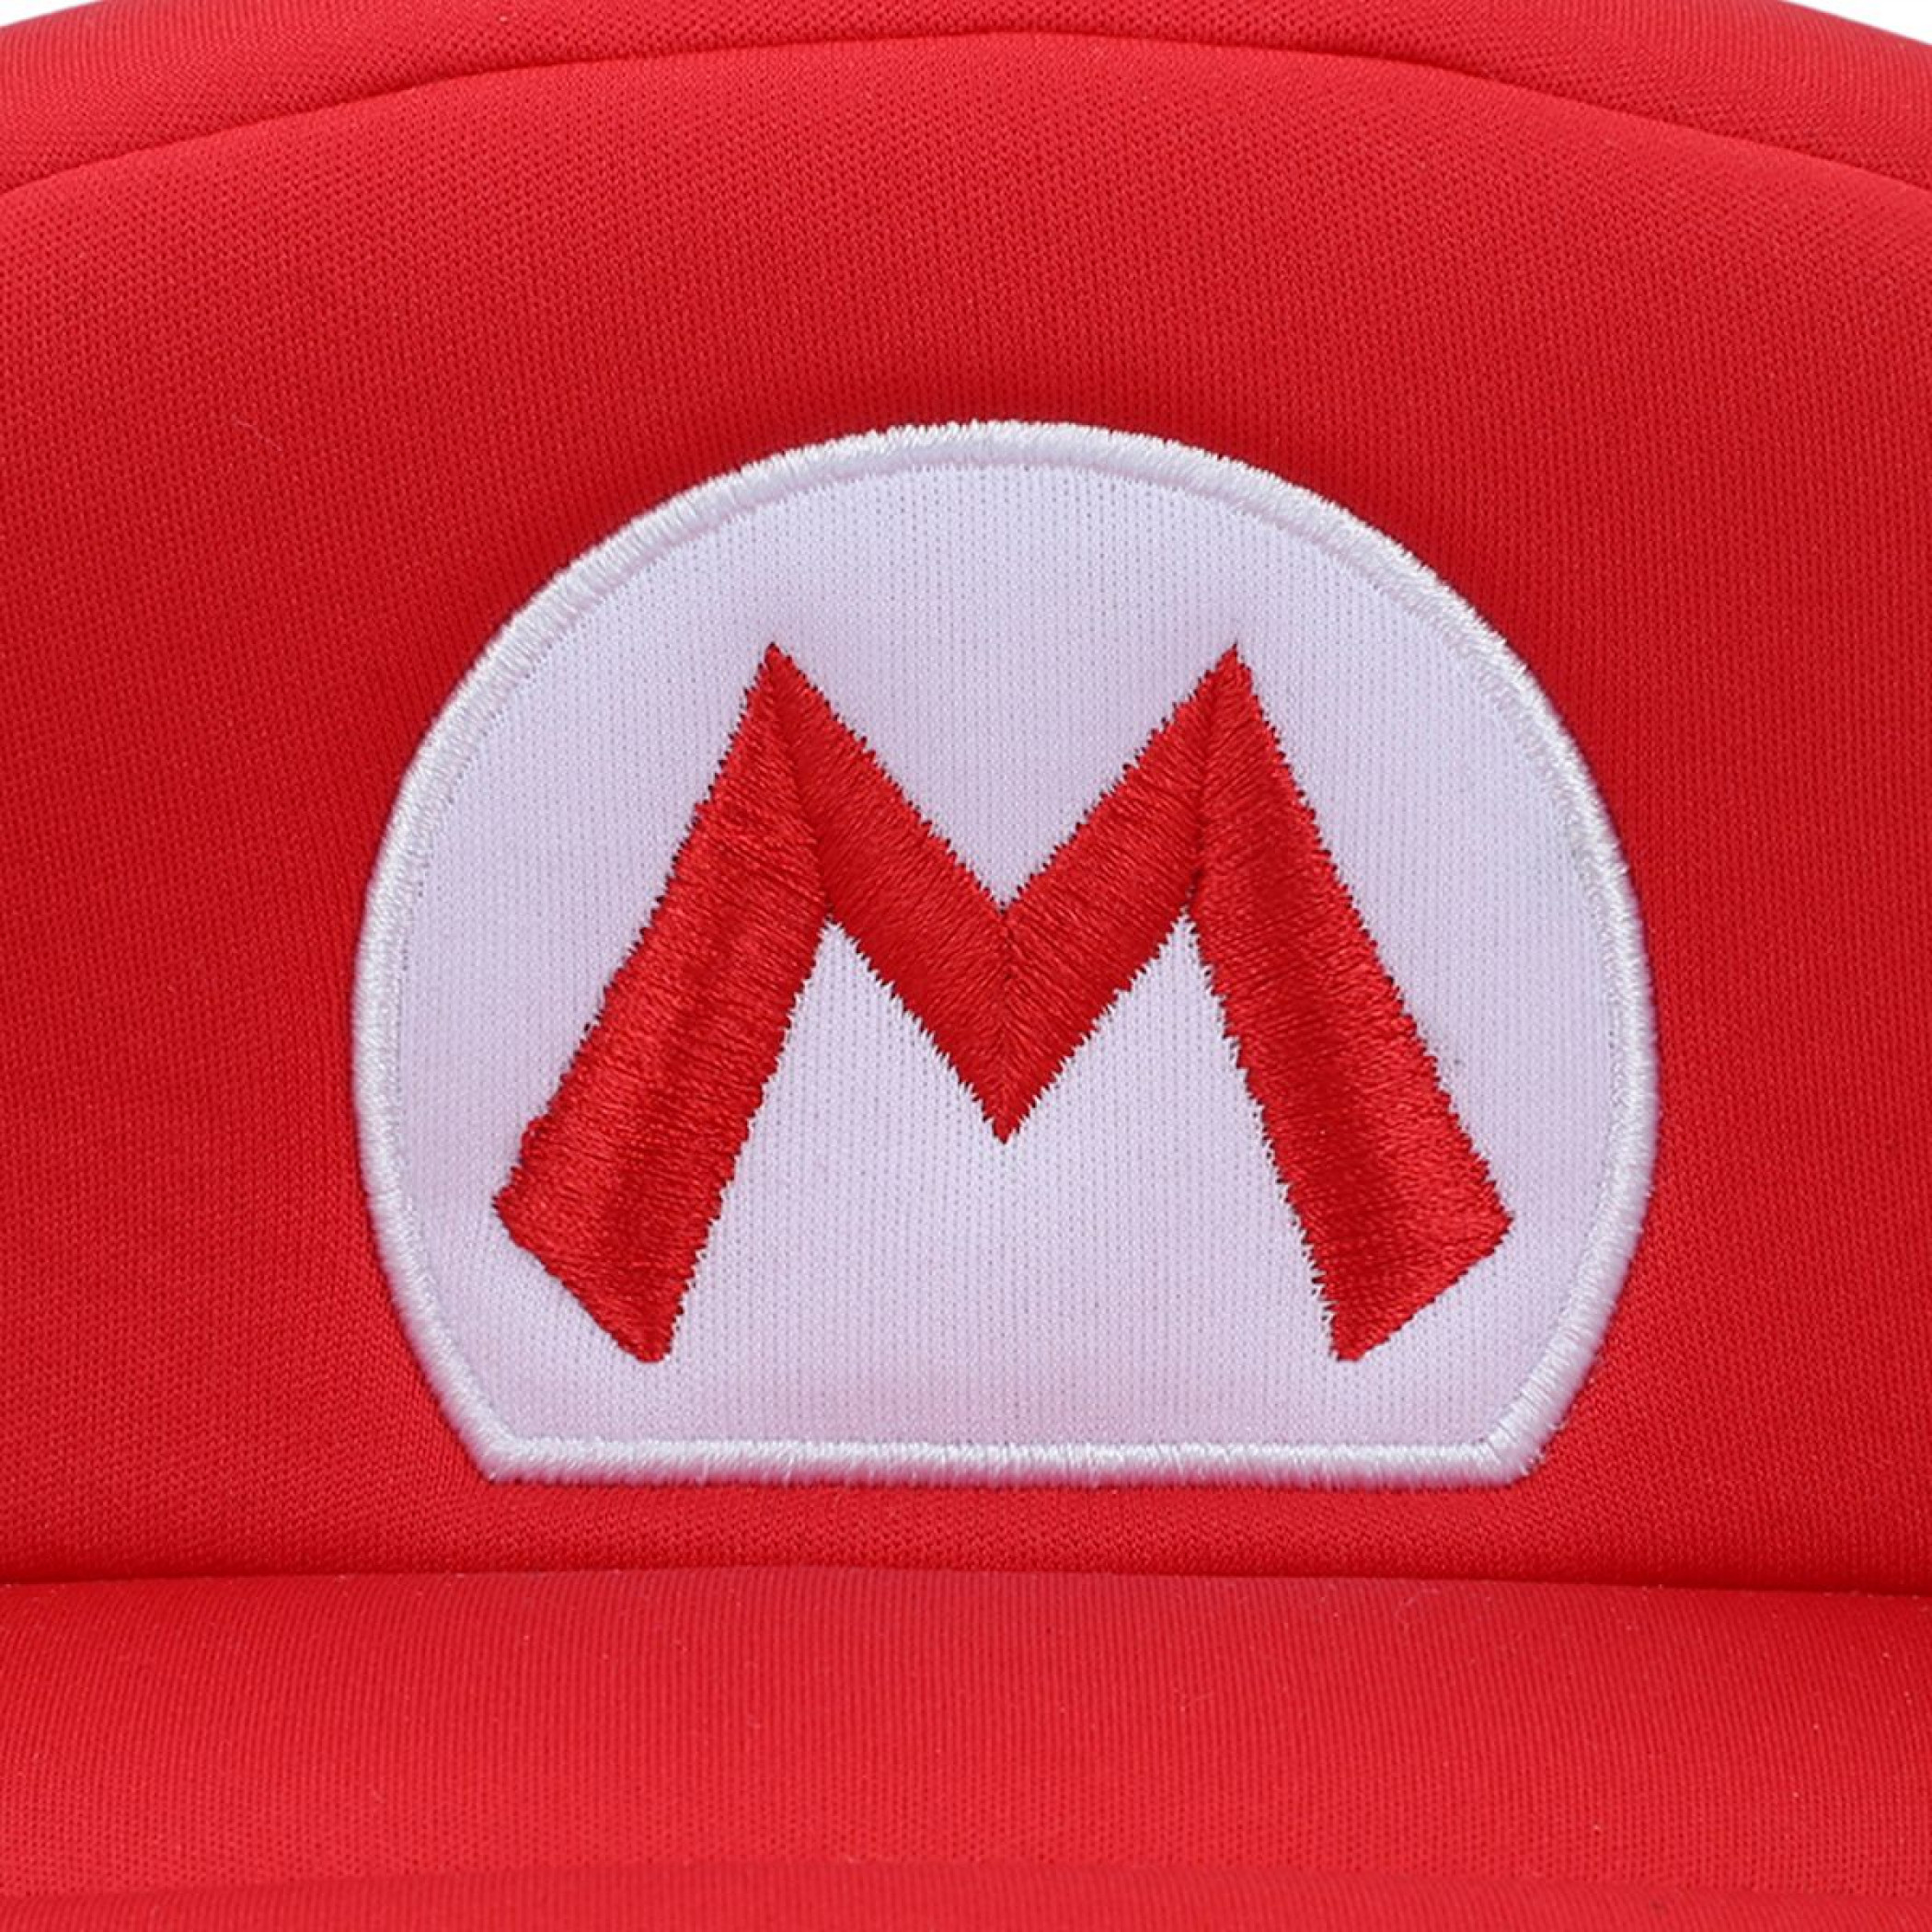 Super Mario Bros. Mario Embroidered Cosplay Hat